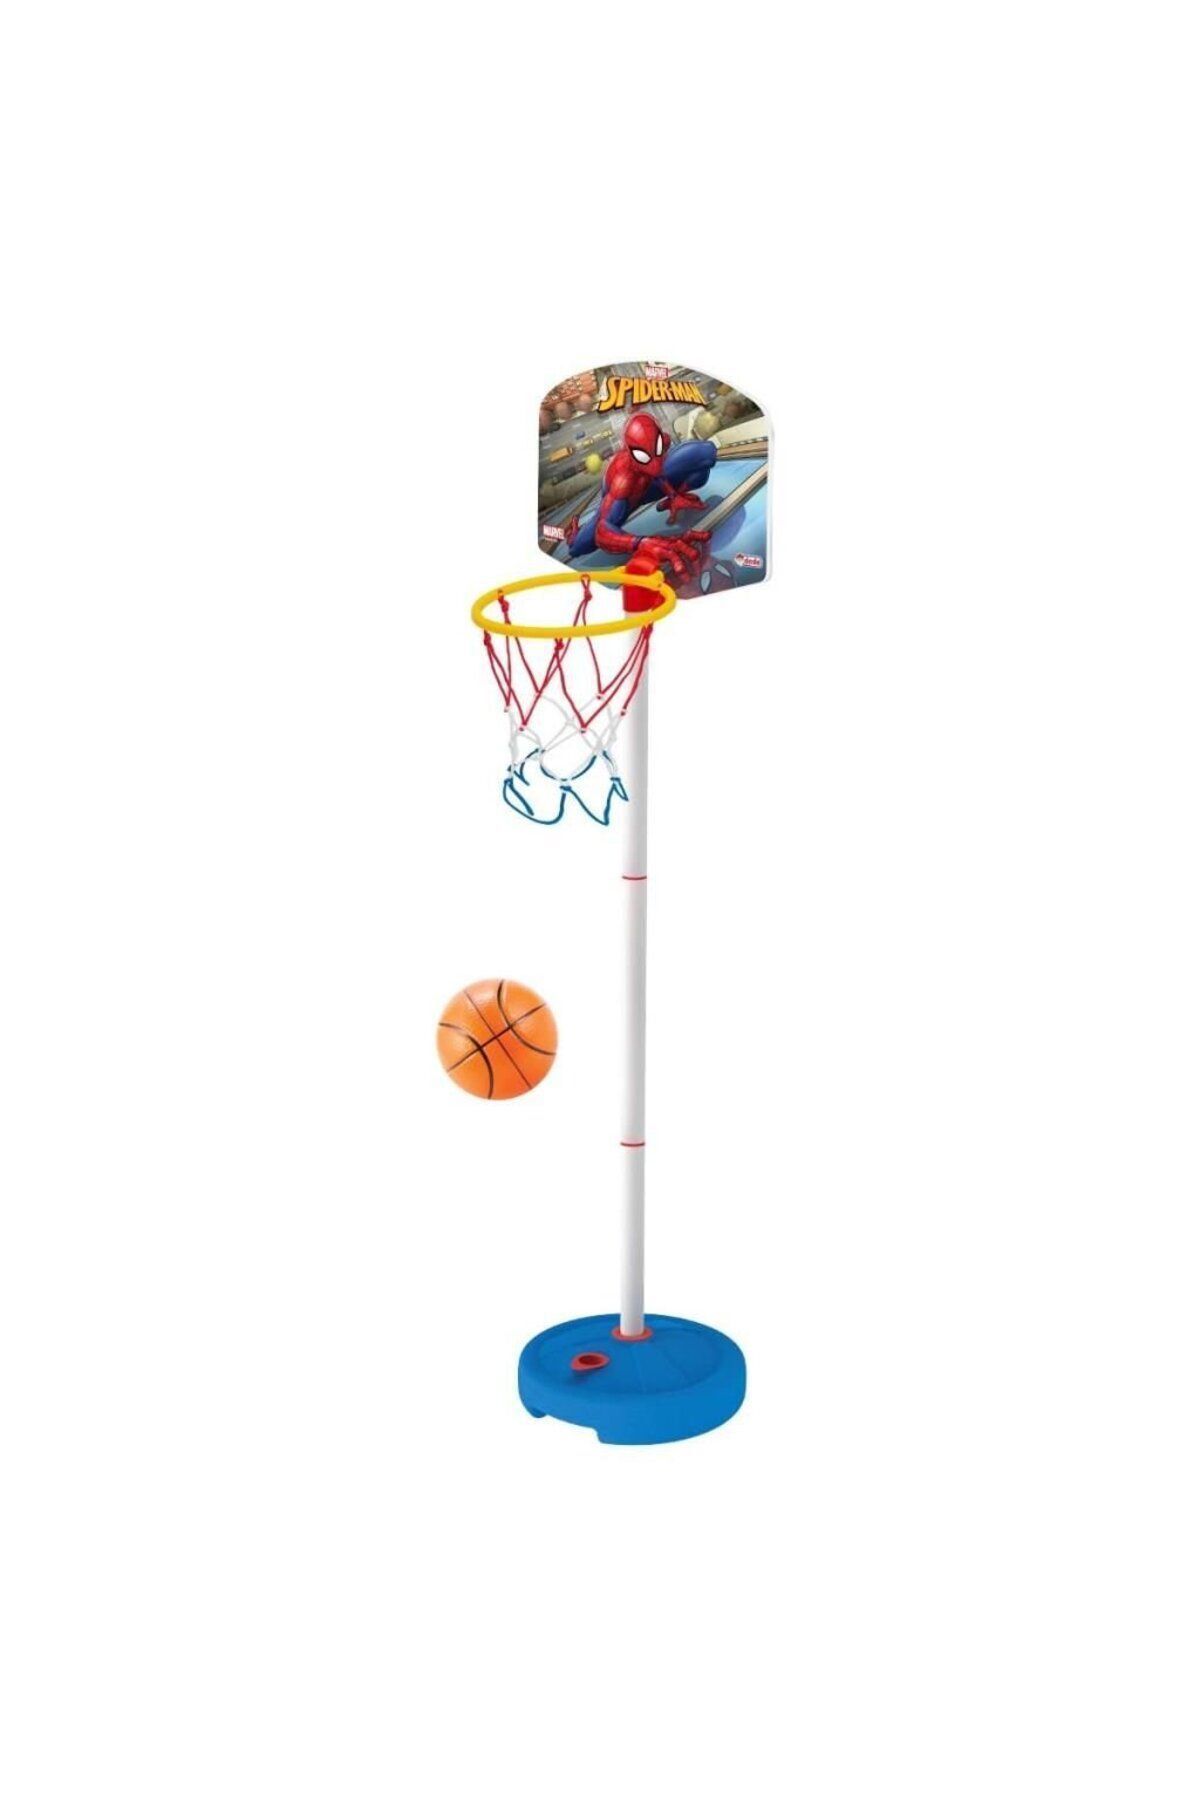 OMZ Spidermaning Küçük Ayaklı Basketbol Potası 2 Set Kız Erkek Çocuk Oyuncakları Eğitici Oyuncaklar